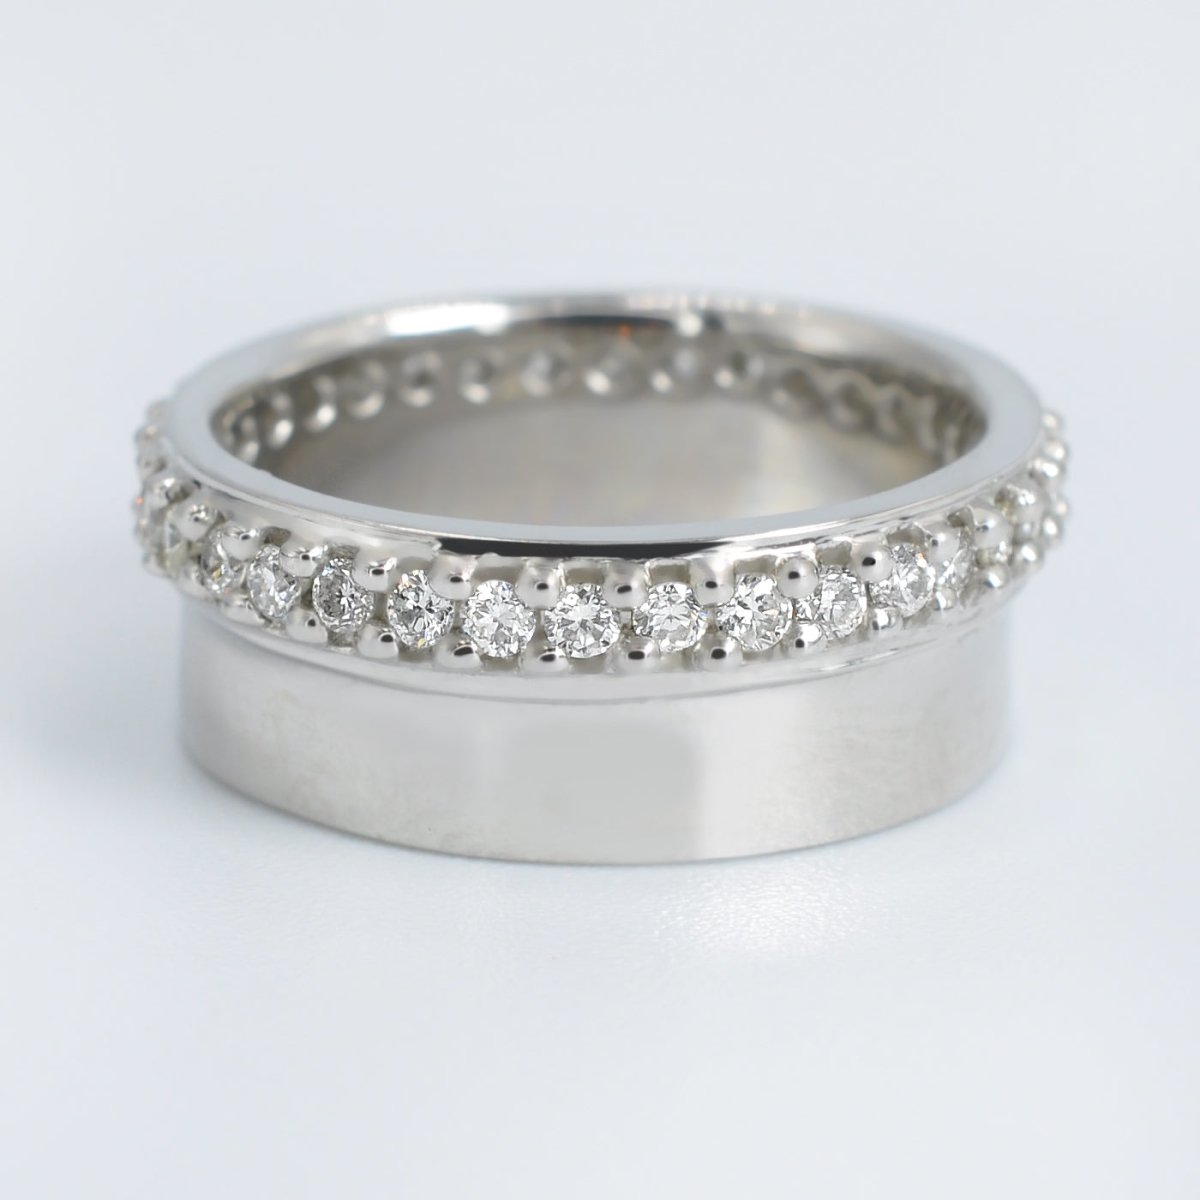 Exclusive 0.75 CT Round Cut Diamond Wedding Ring in Platinum - Primestyle.com